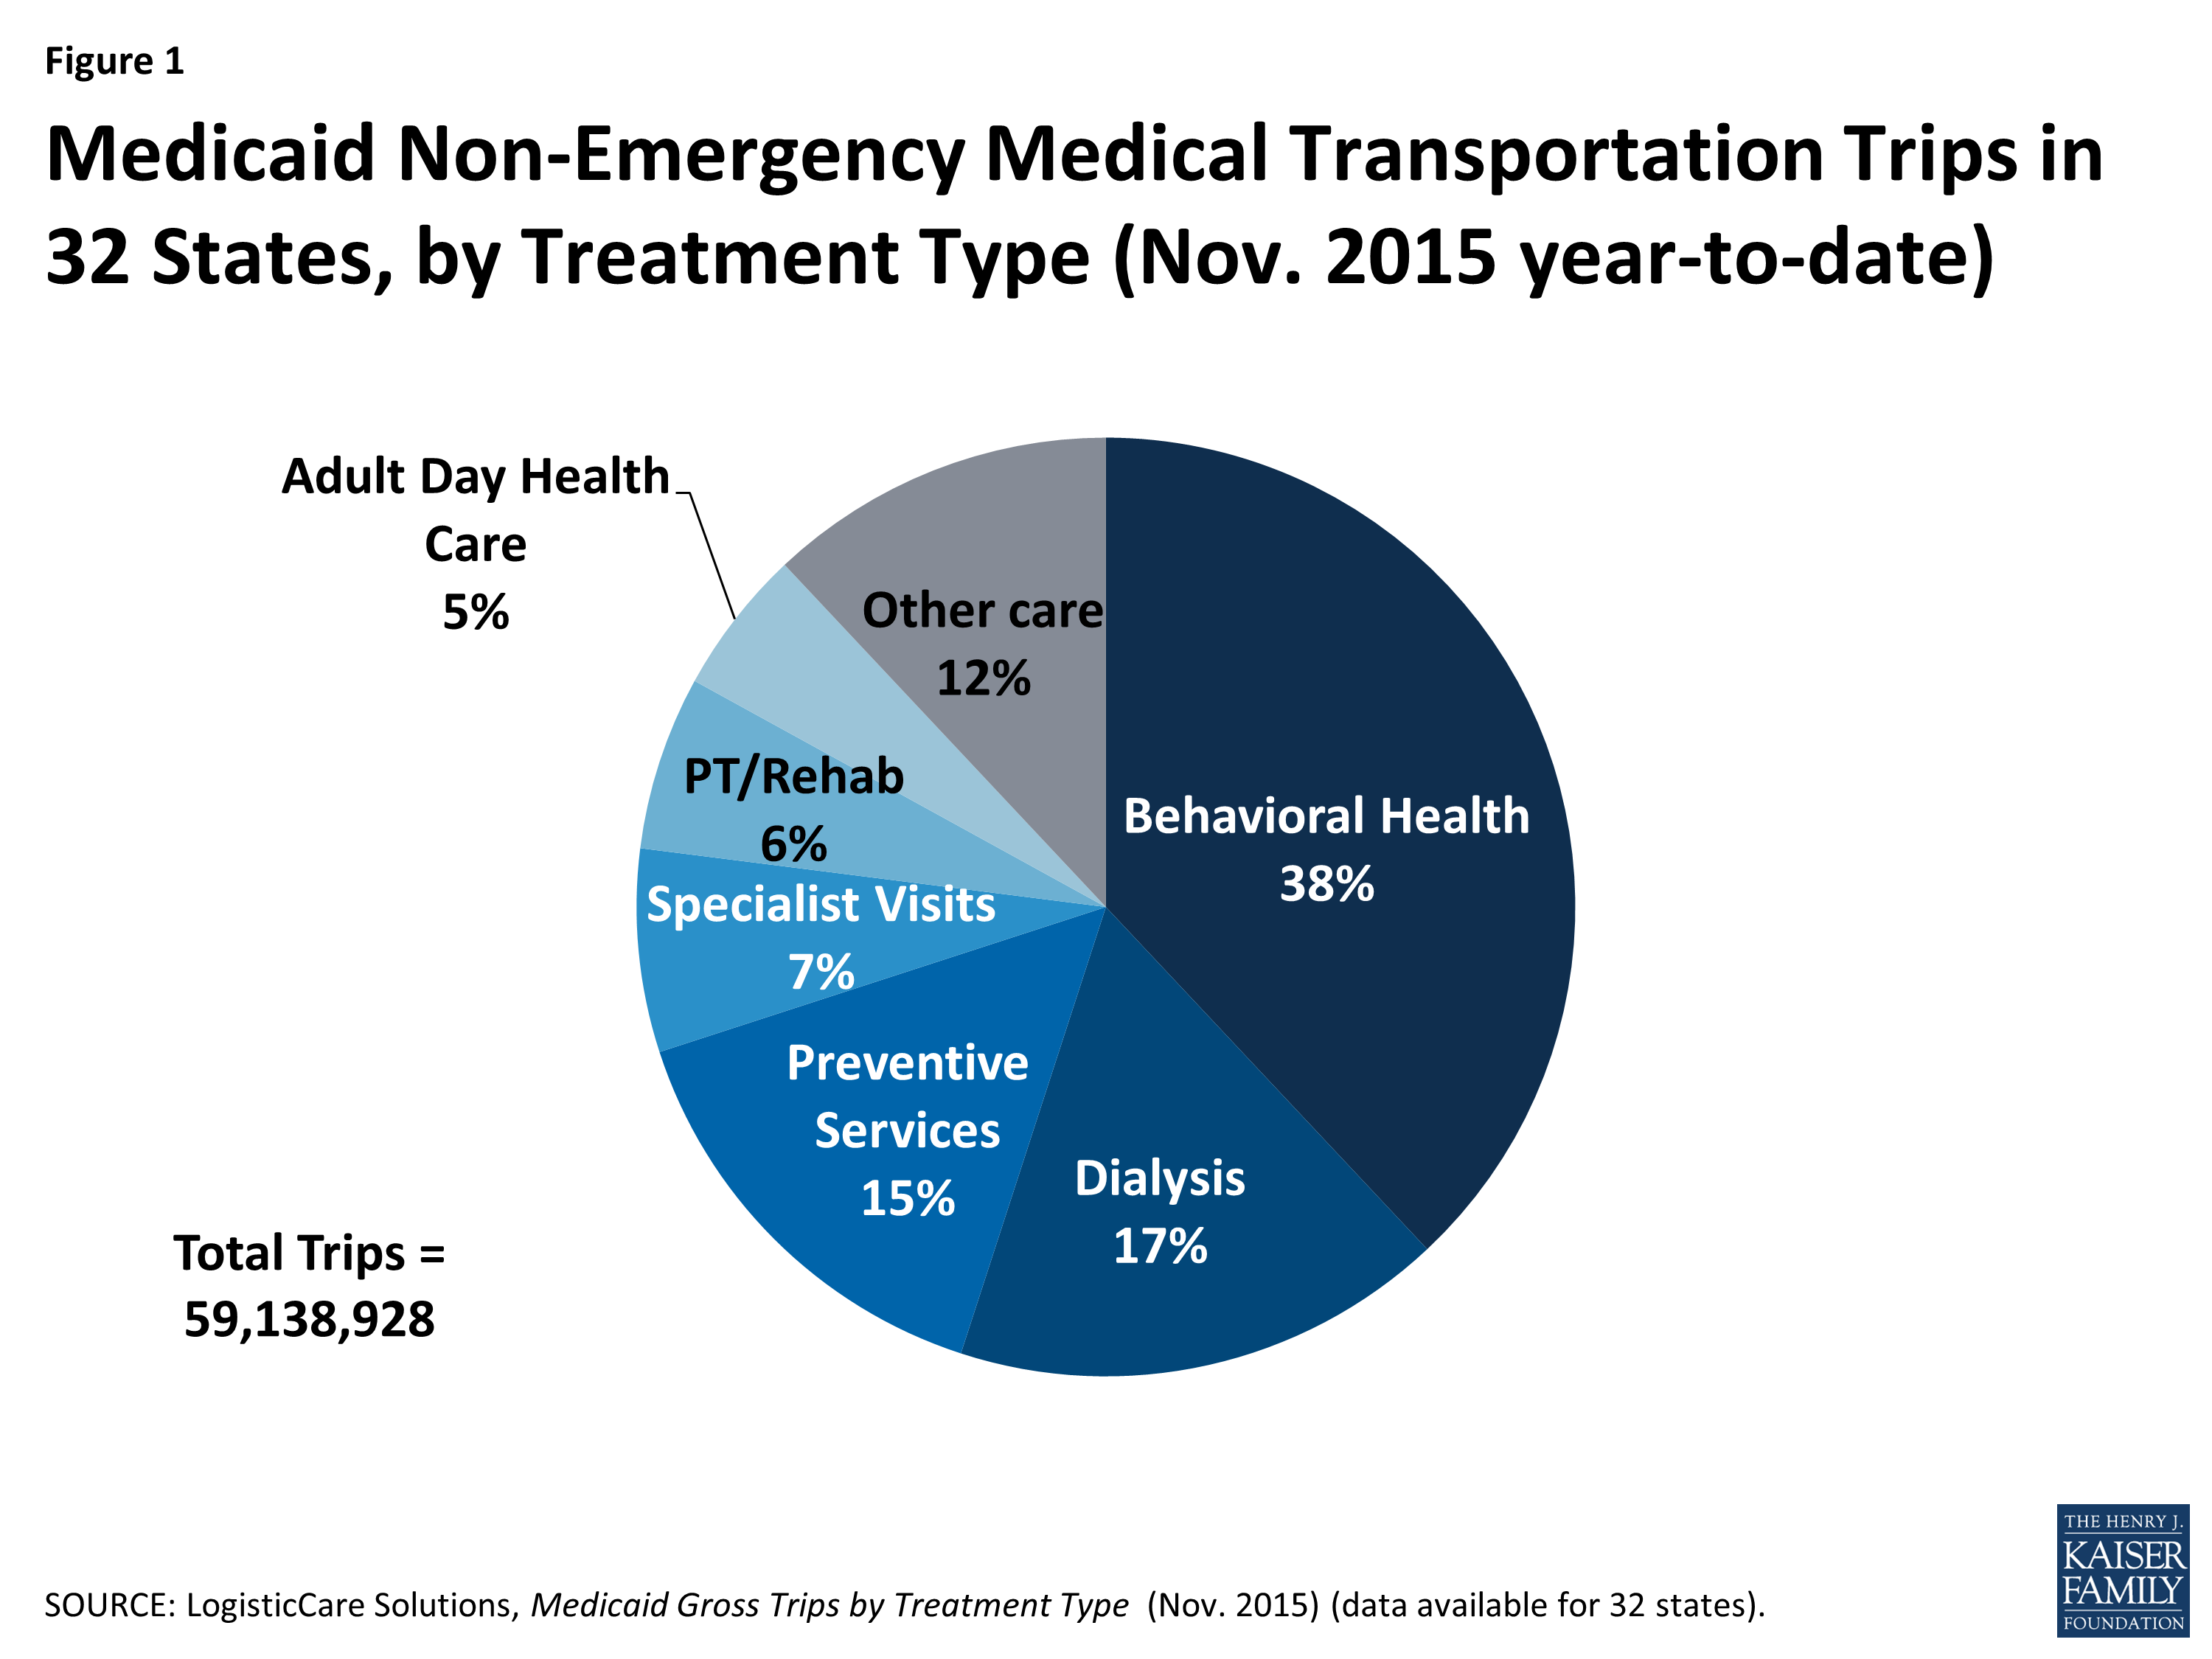  Figure 1: Voyages de Transport Médical Non urgents Medicaid dans 32 États, par Type de traitement (Nov. 2015 depuis le début de l'année) 